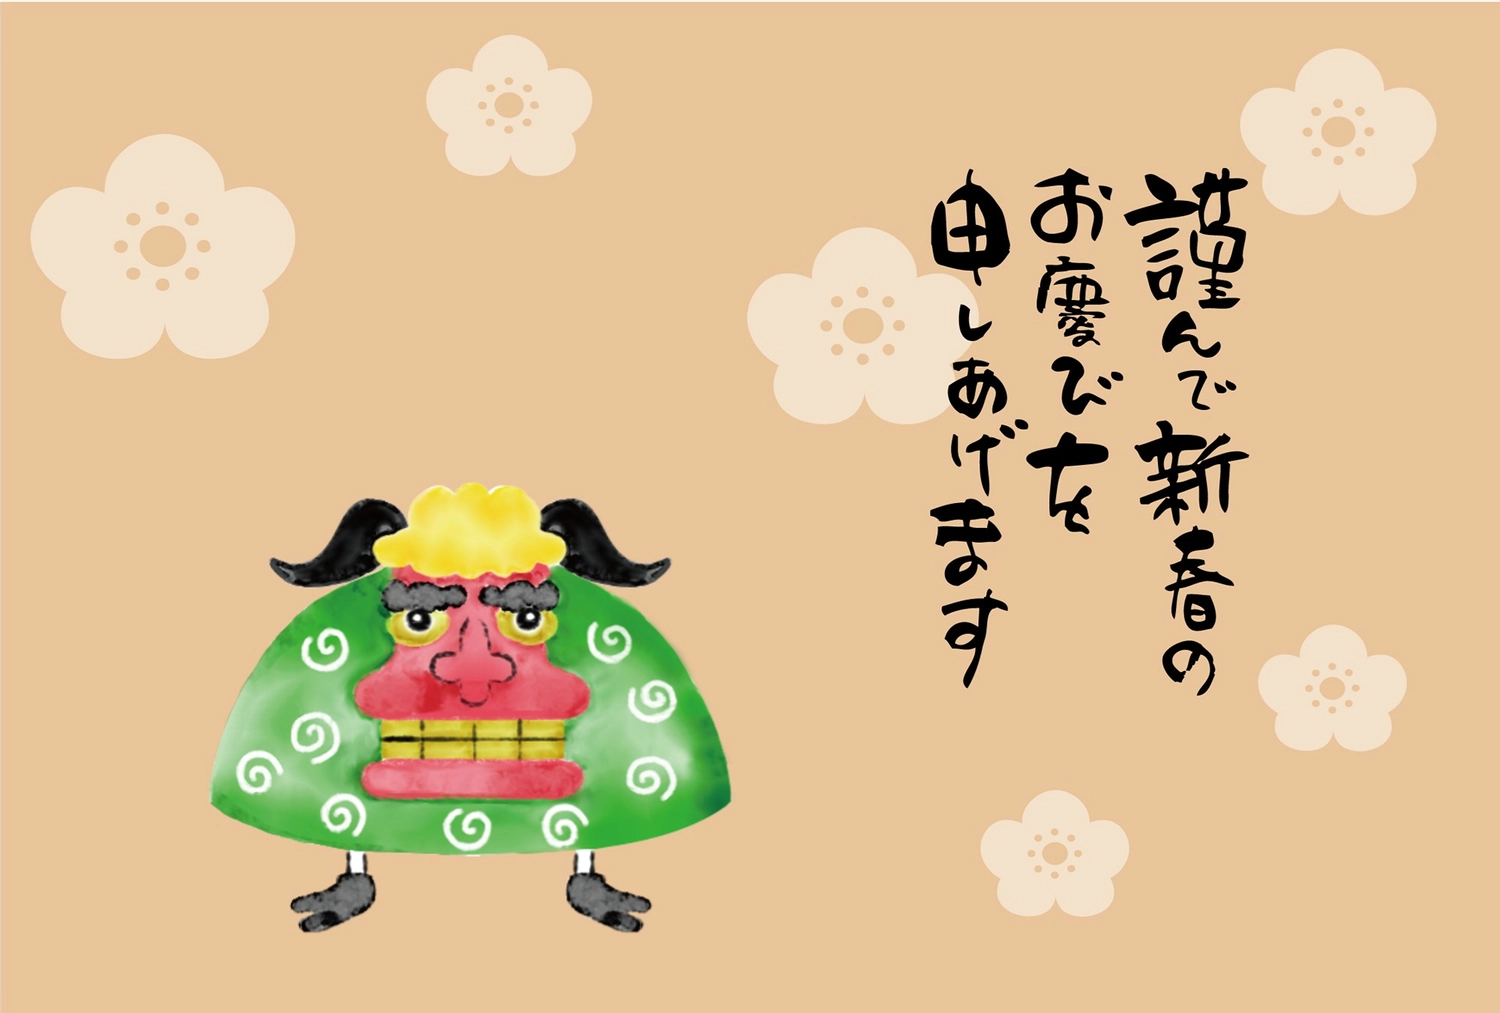 獅子舞年賀状, NEW YEAR, Color background, Flower pattern, New Year Card template